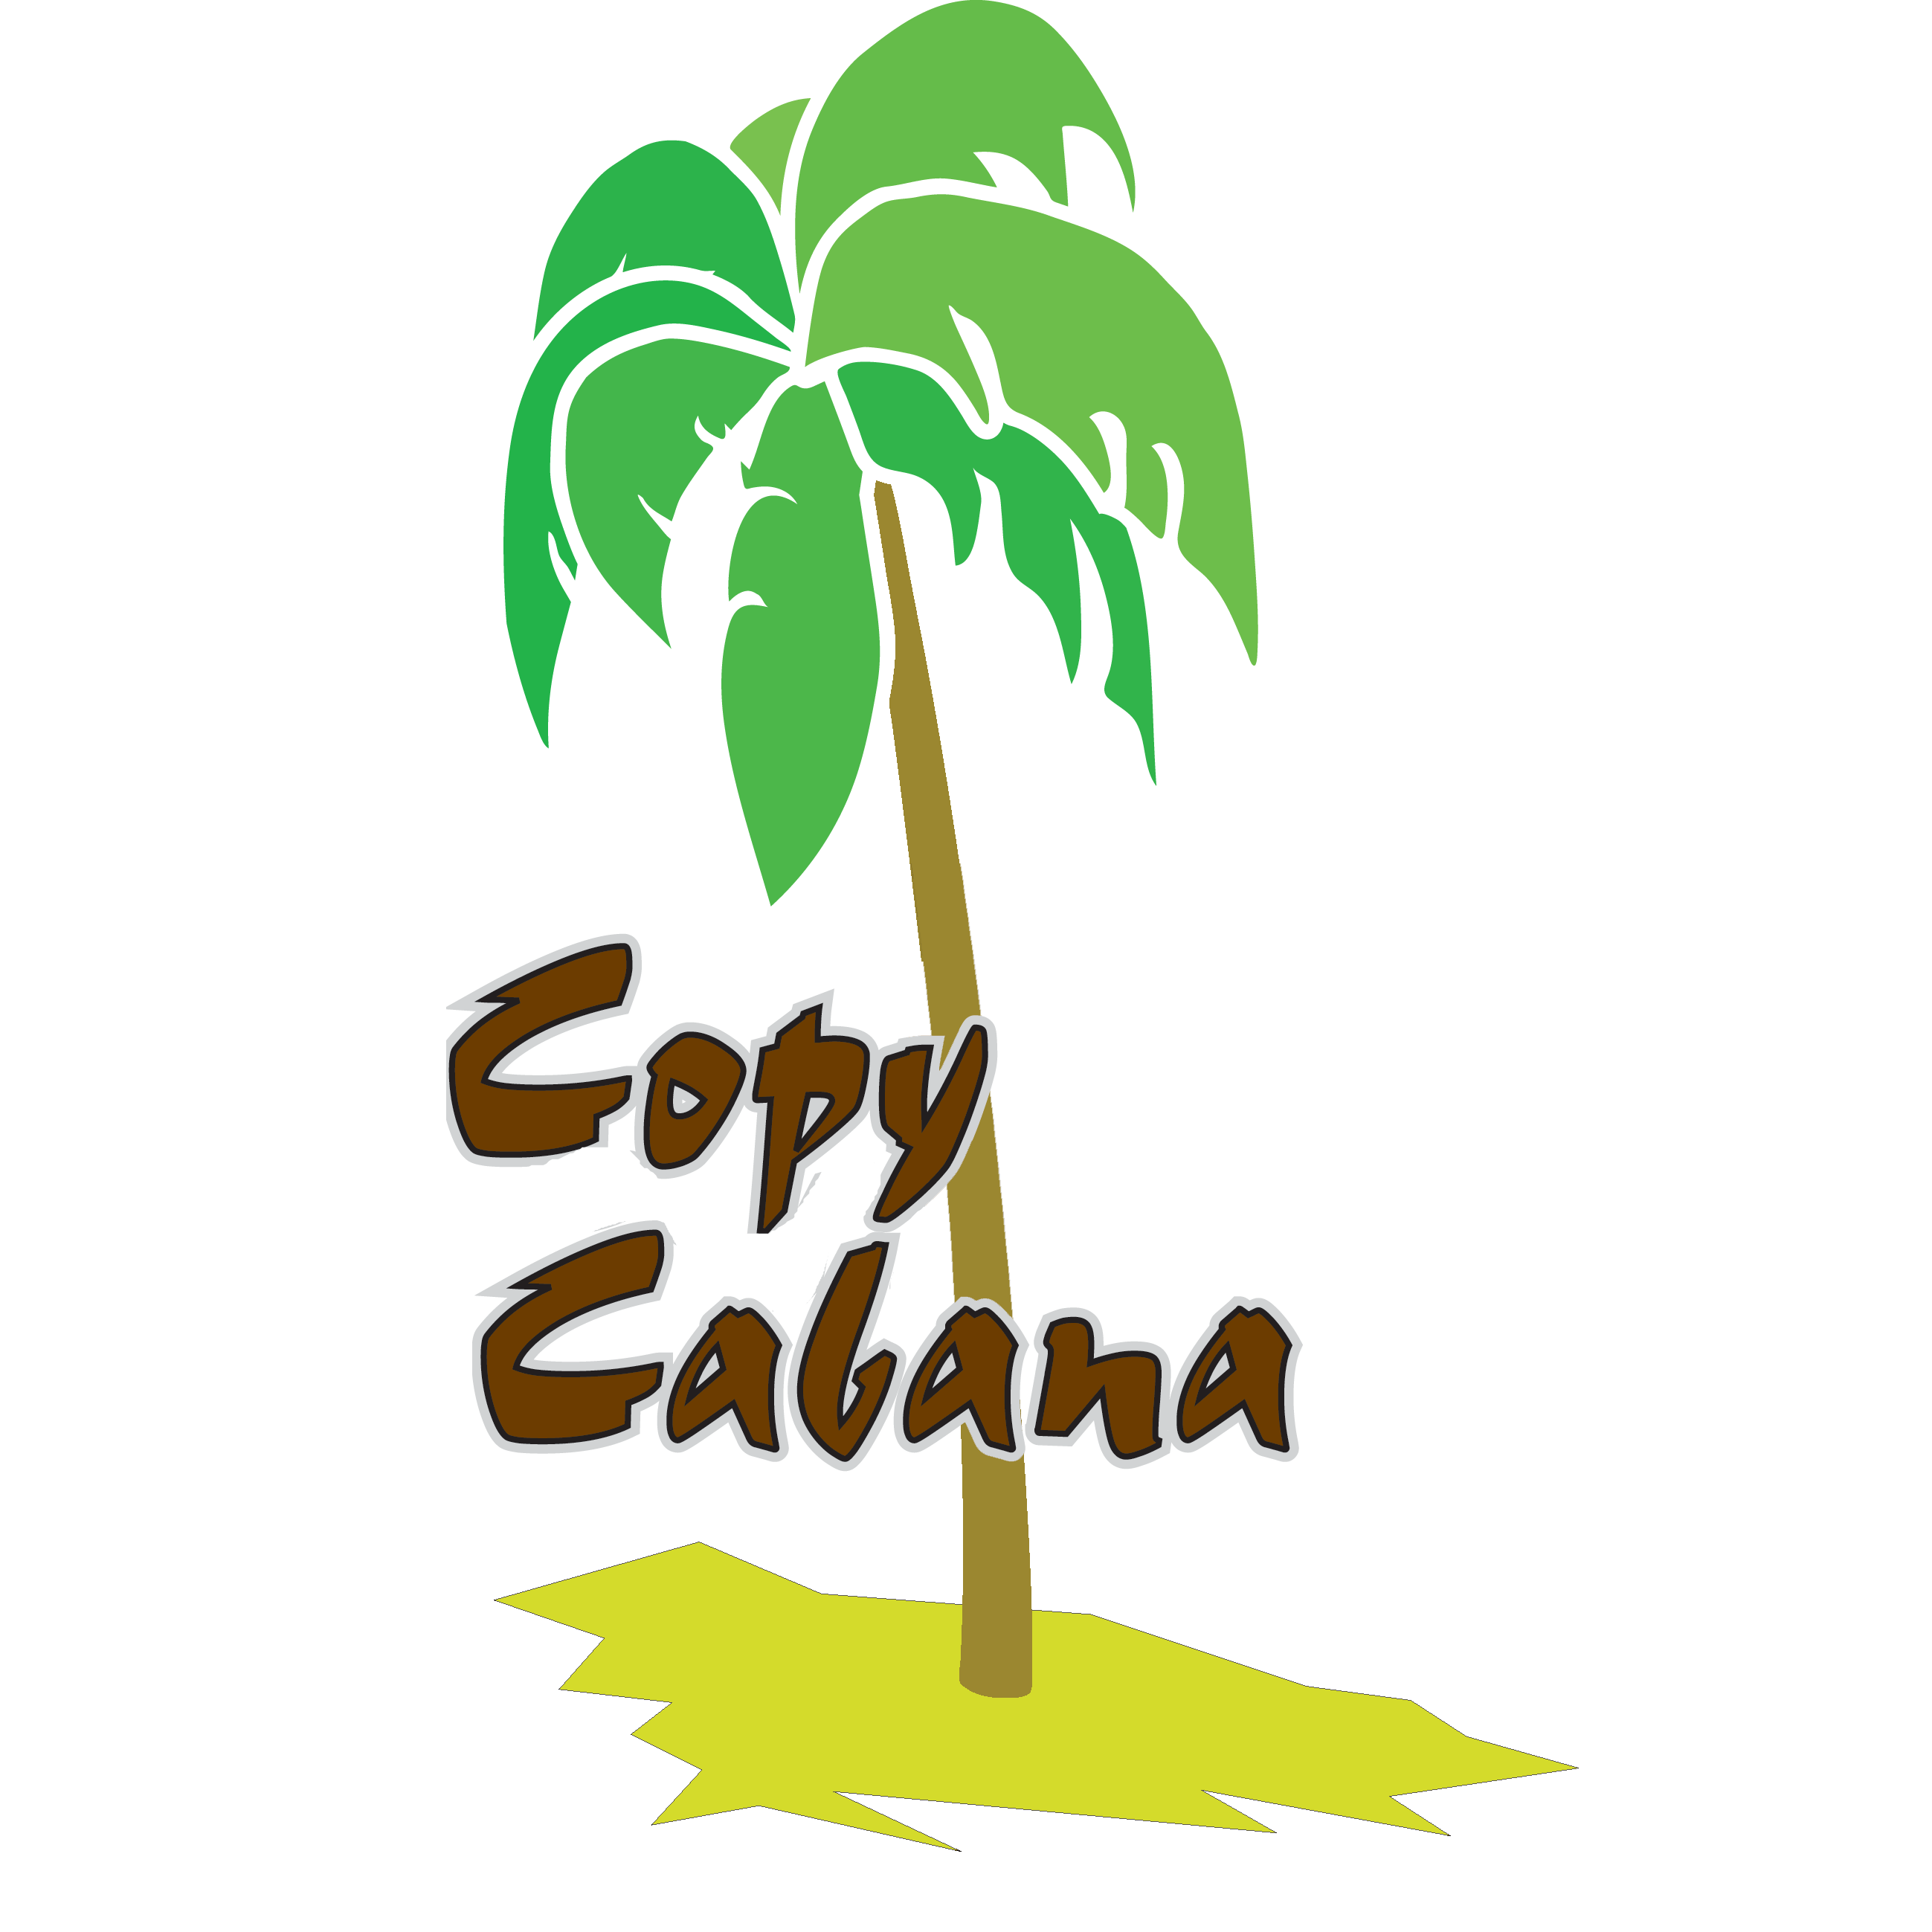 Copy Cabana Digitaldruckerei in Dresden - Logo